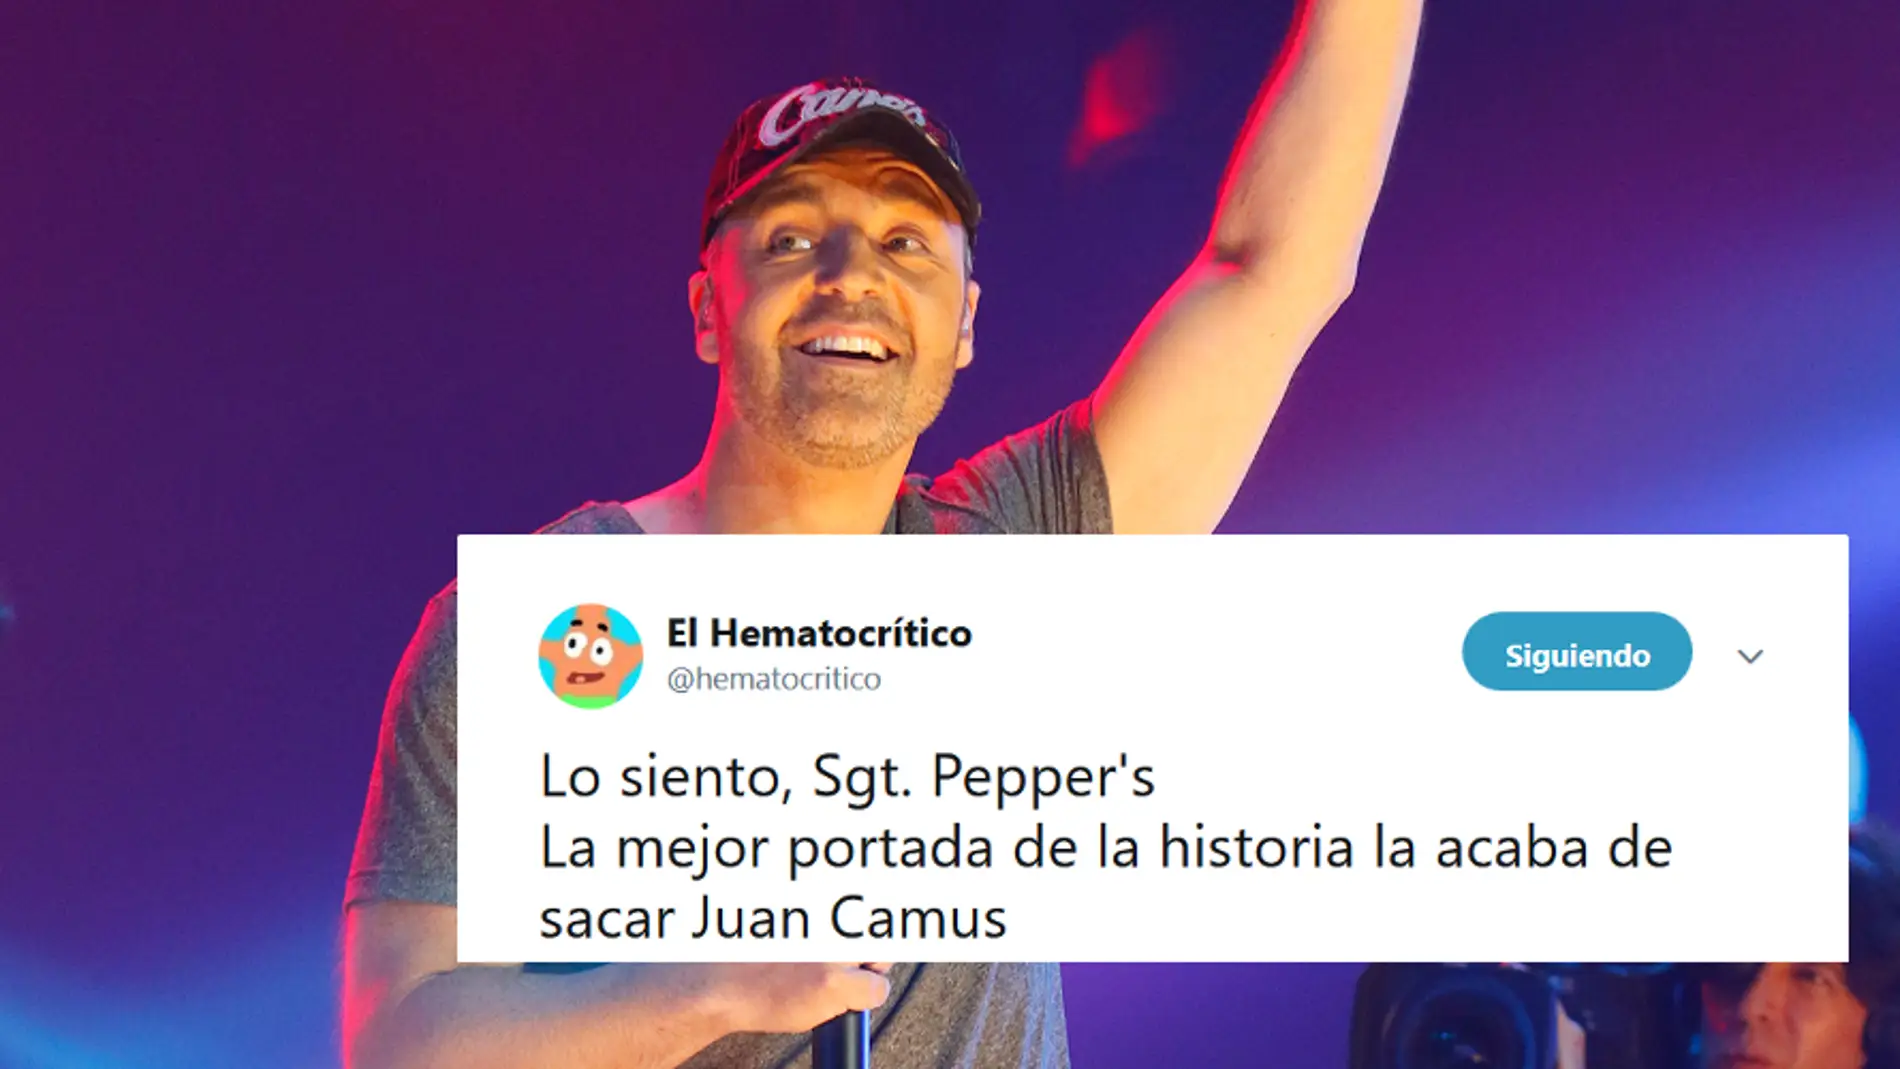 Juan Camus